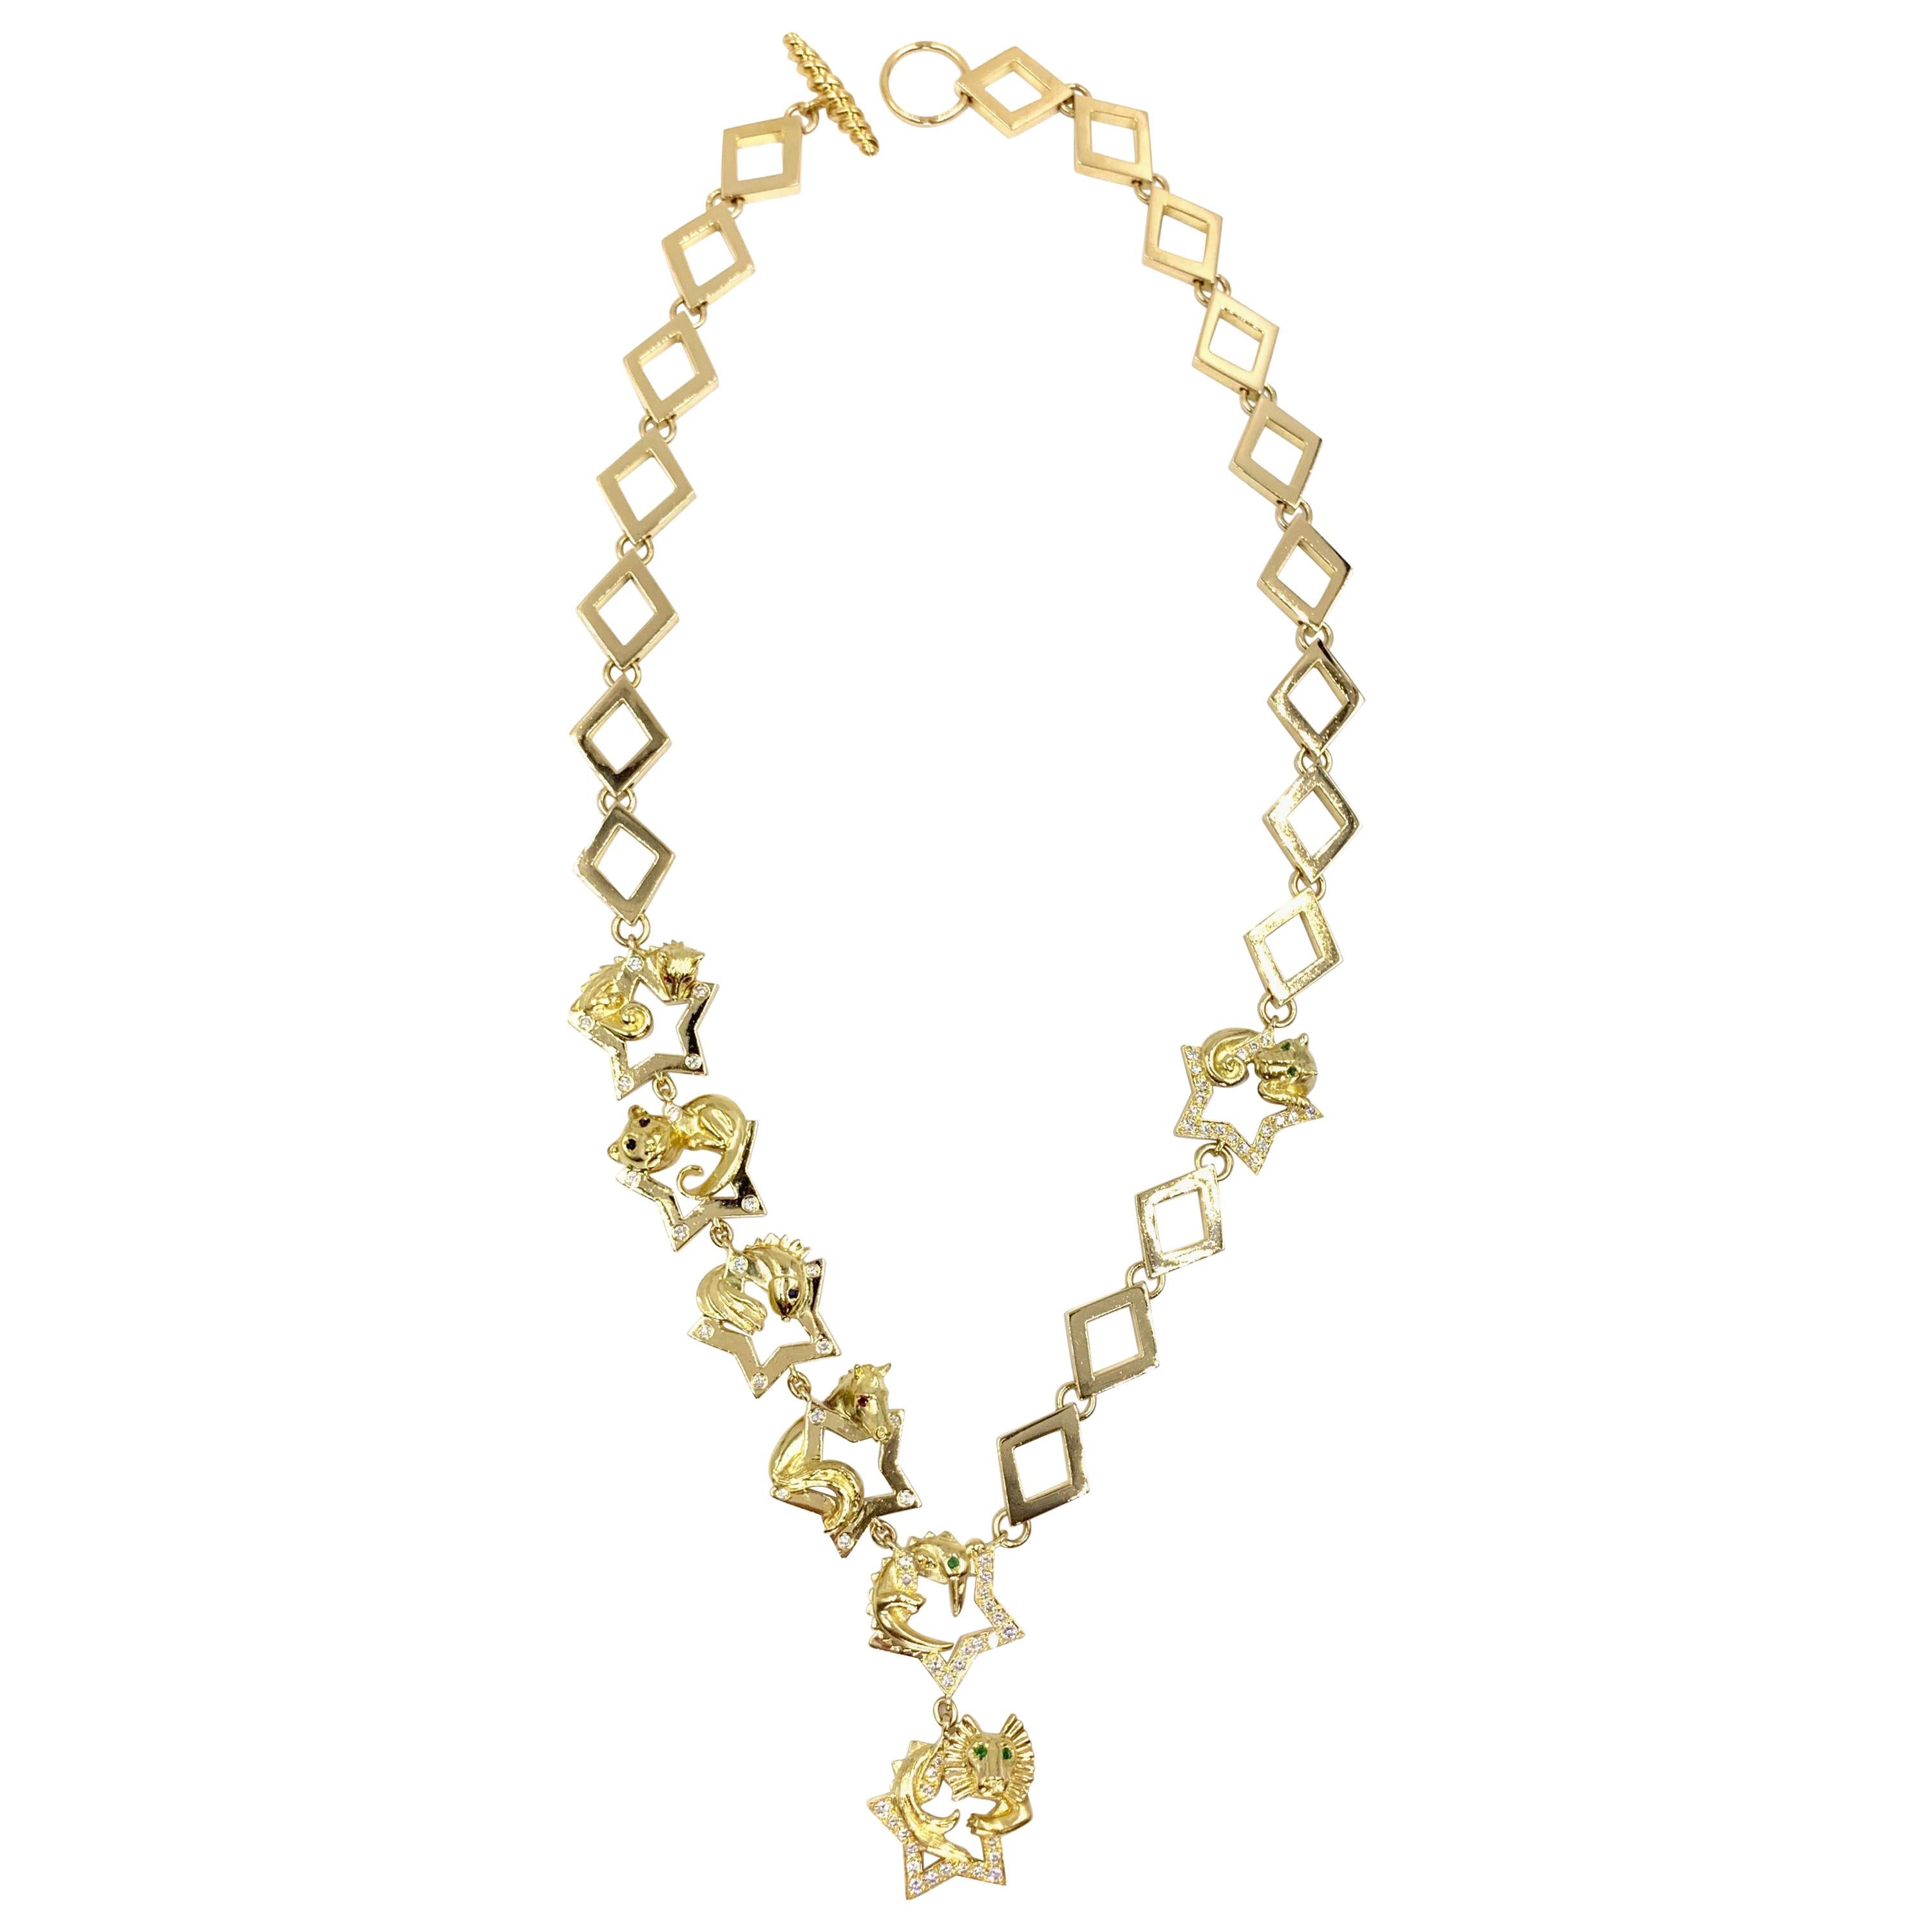 18 Karat Charles Turi Animal Star Necklace with Diamonds and Gemstones